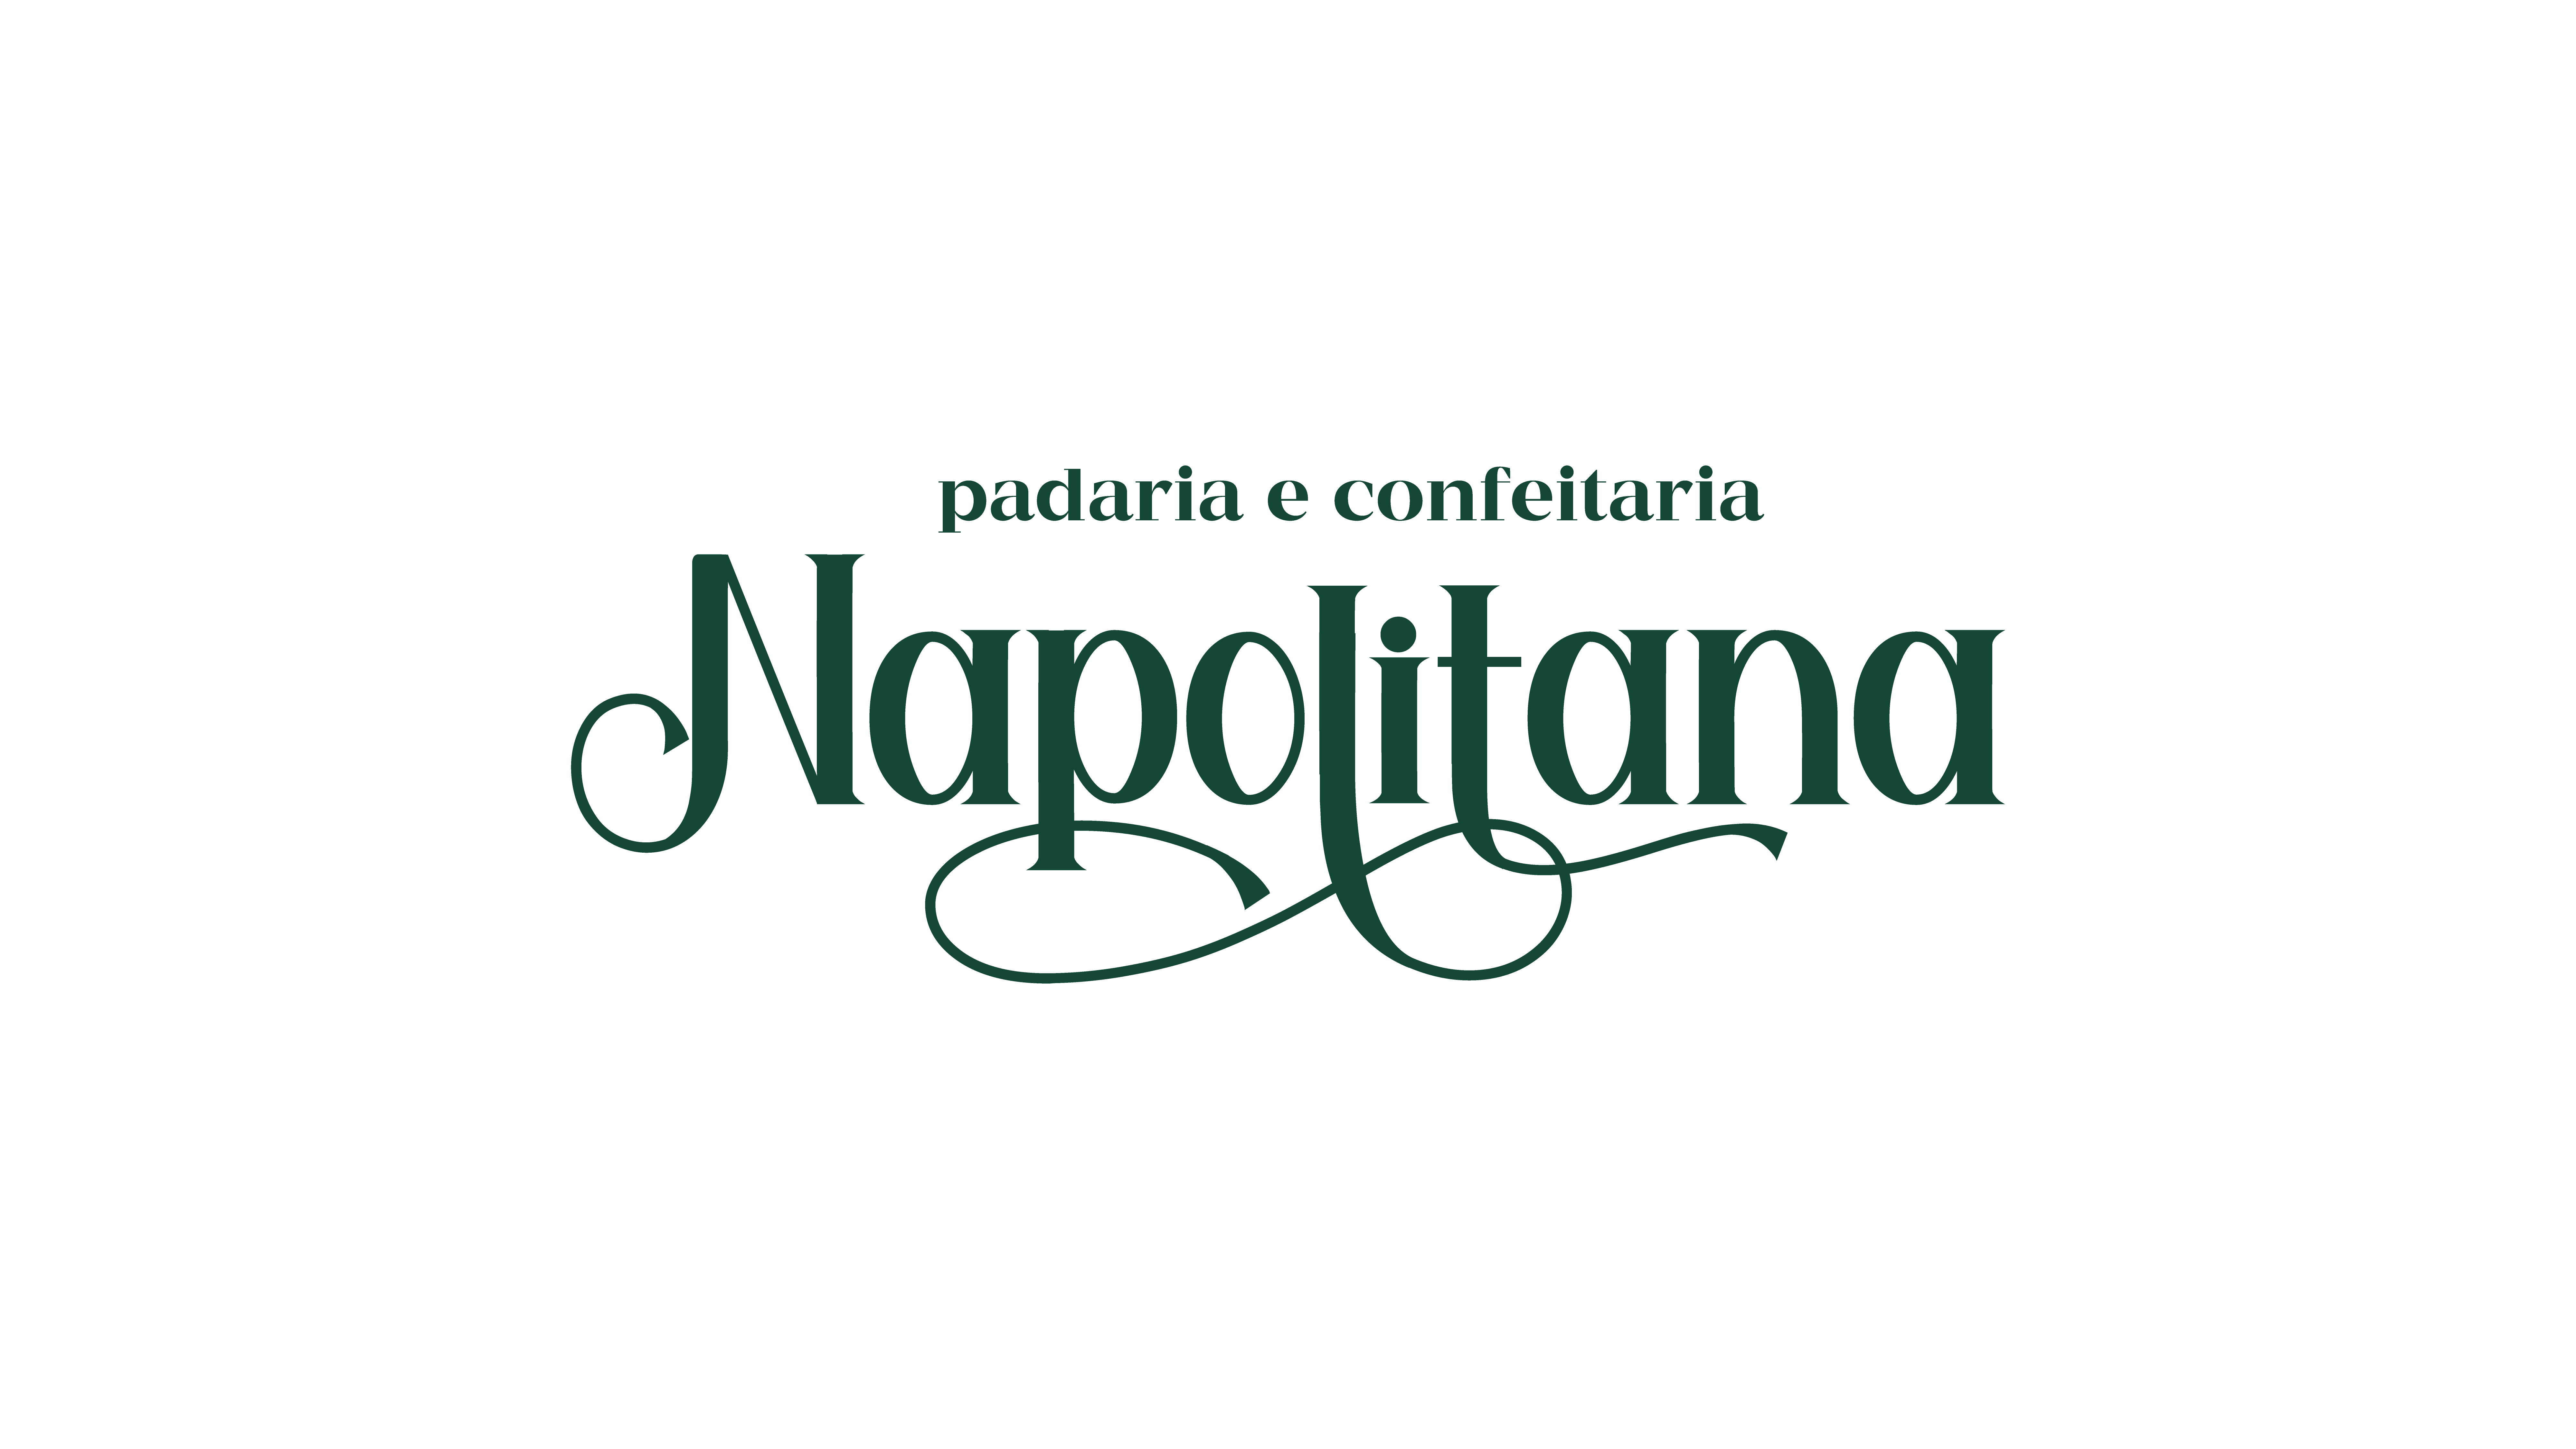 Padaria Napolitana